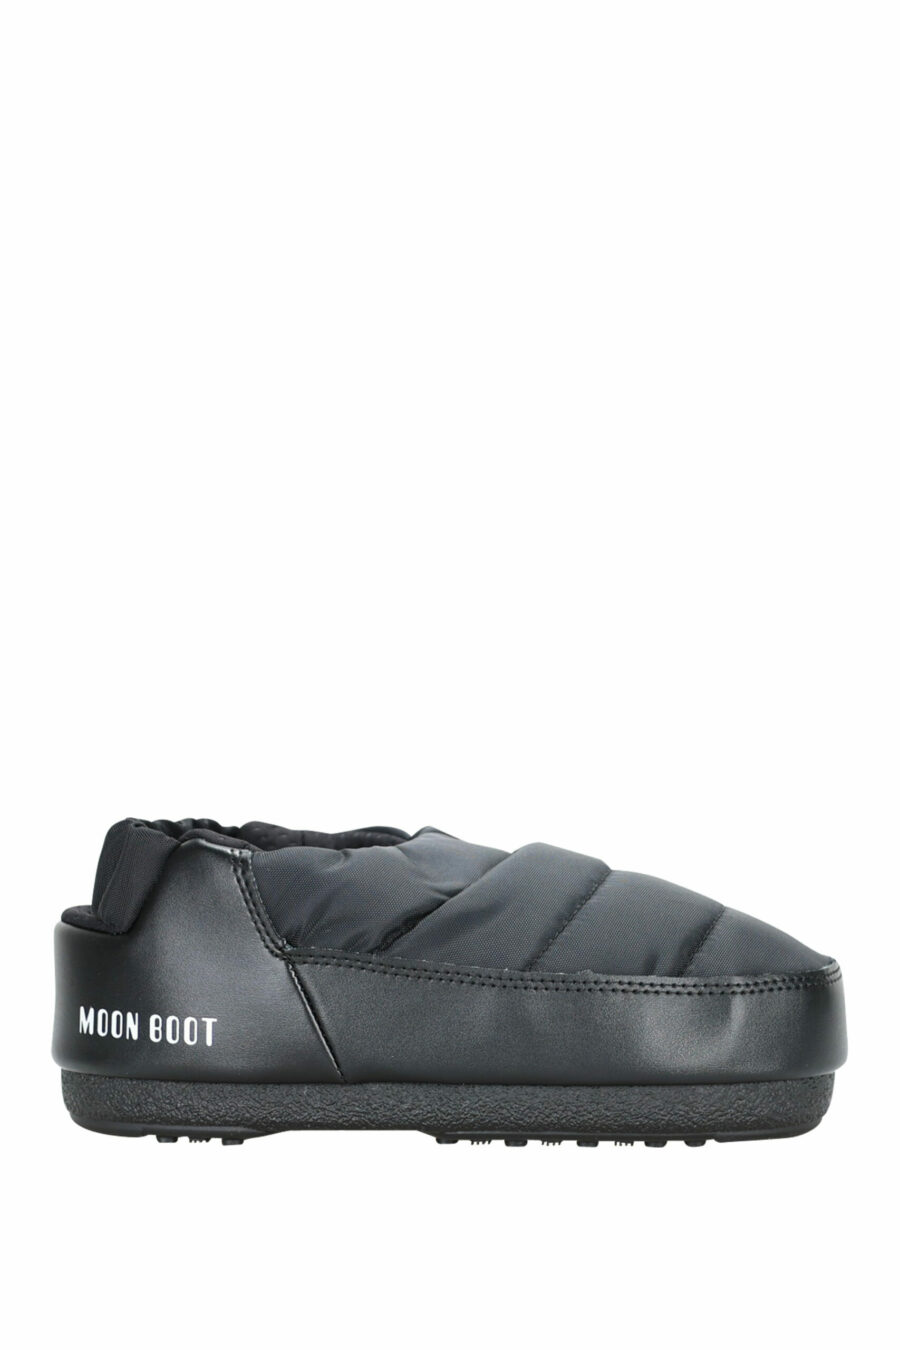 Sandales noires avec logo blanc - 8050032004042